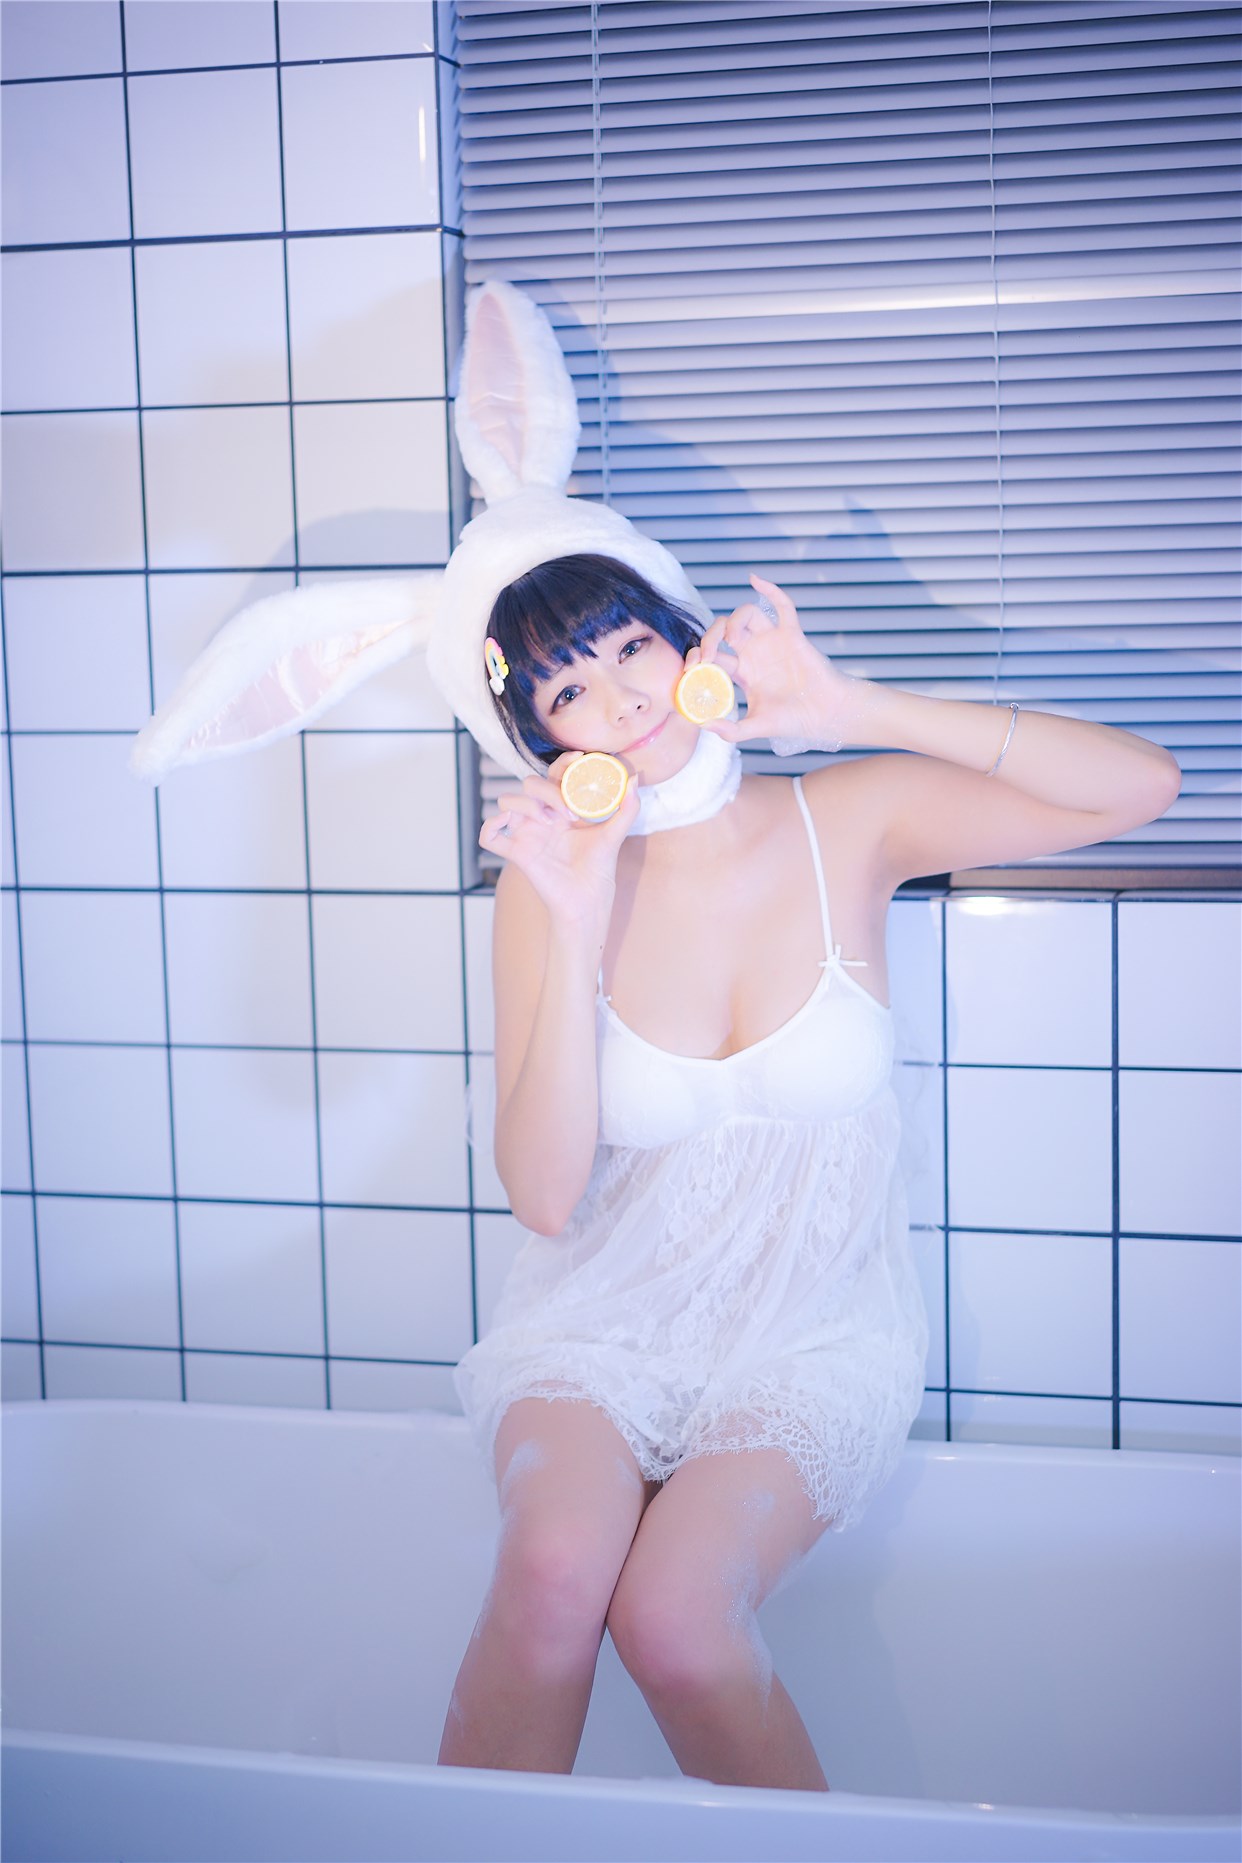 【兔玩映画】浴缸里的兔子 兔玩映画 第26张